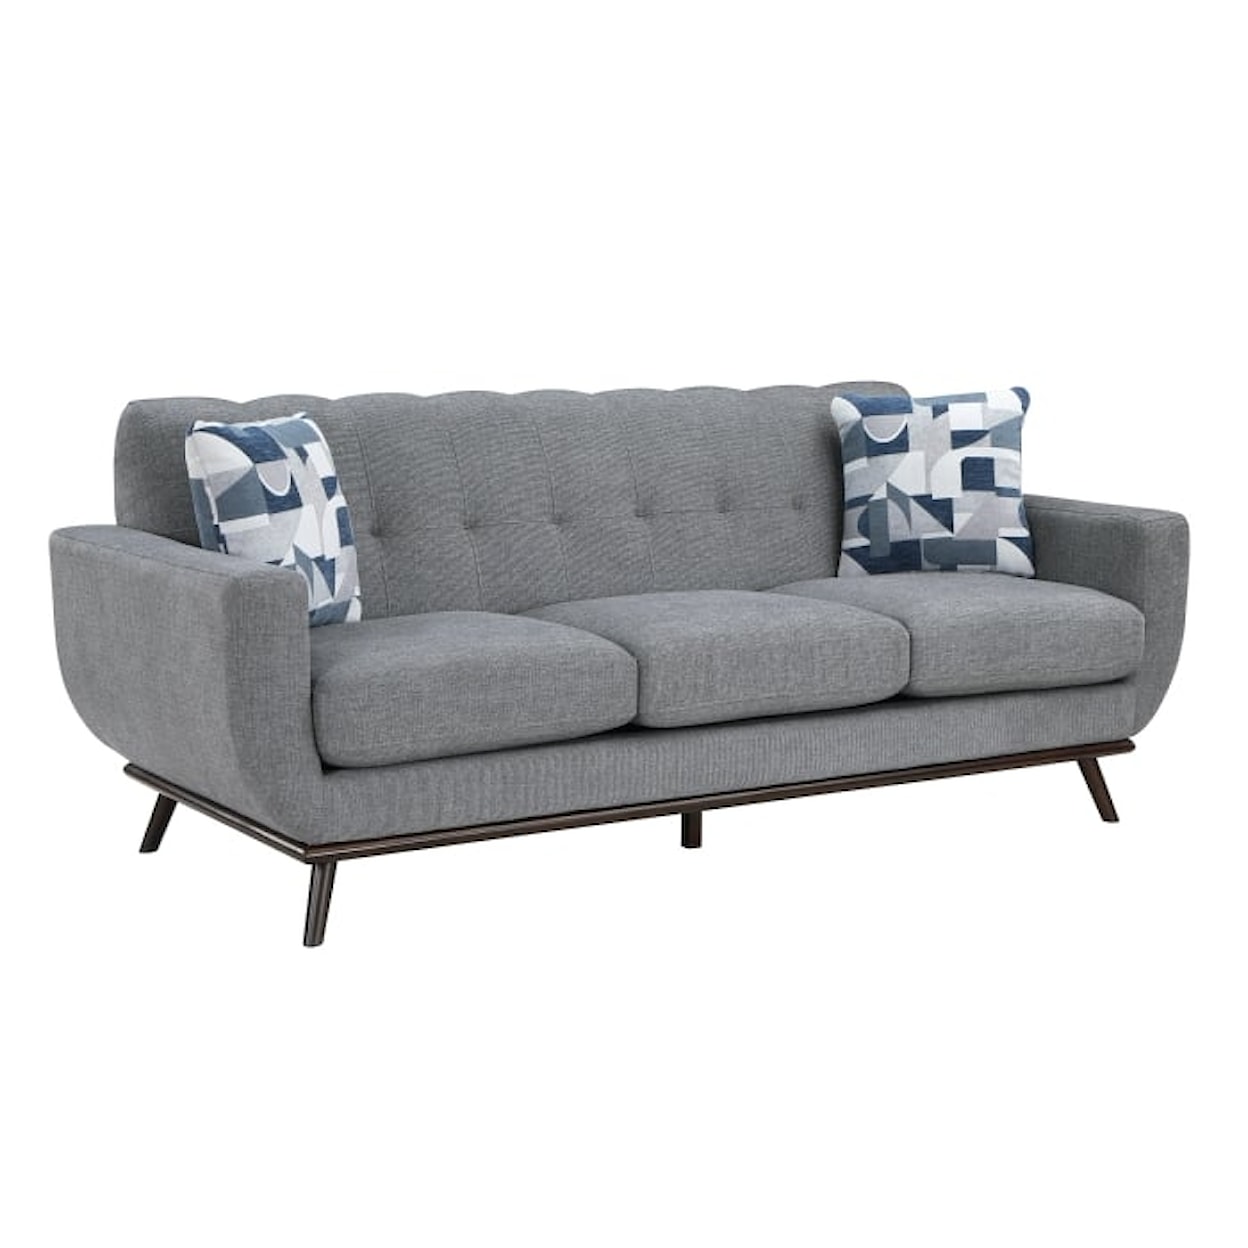 Homelegance Furniture Ever Sofa